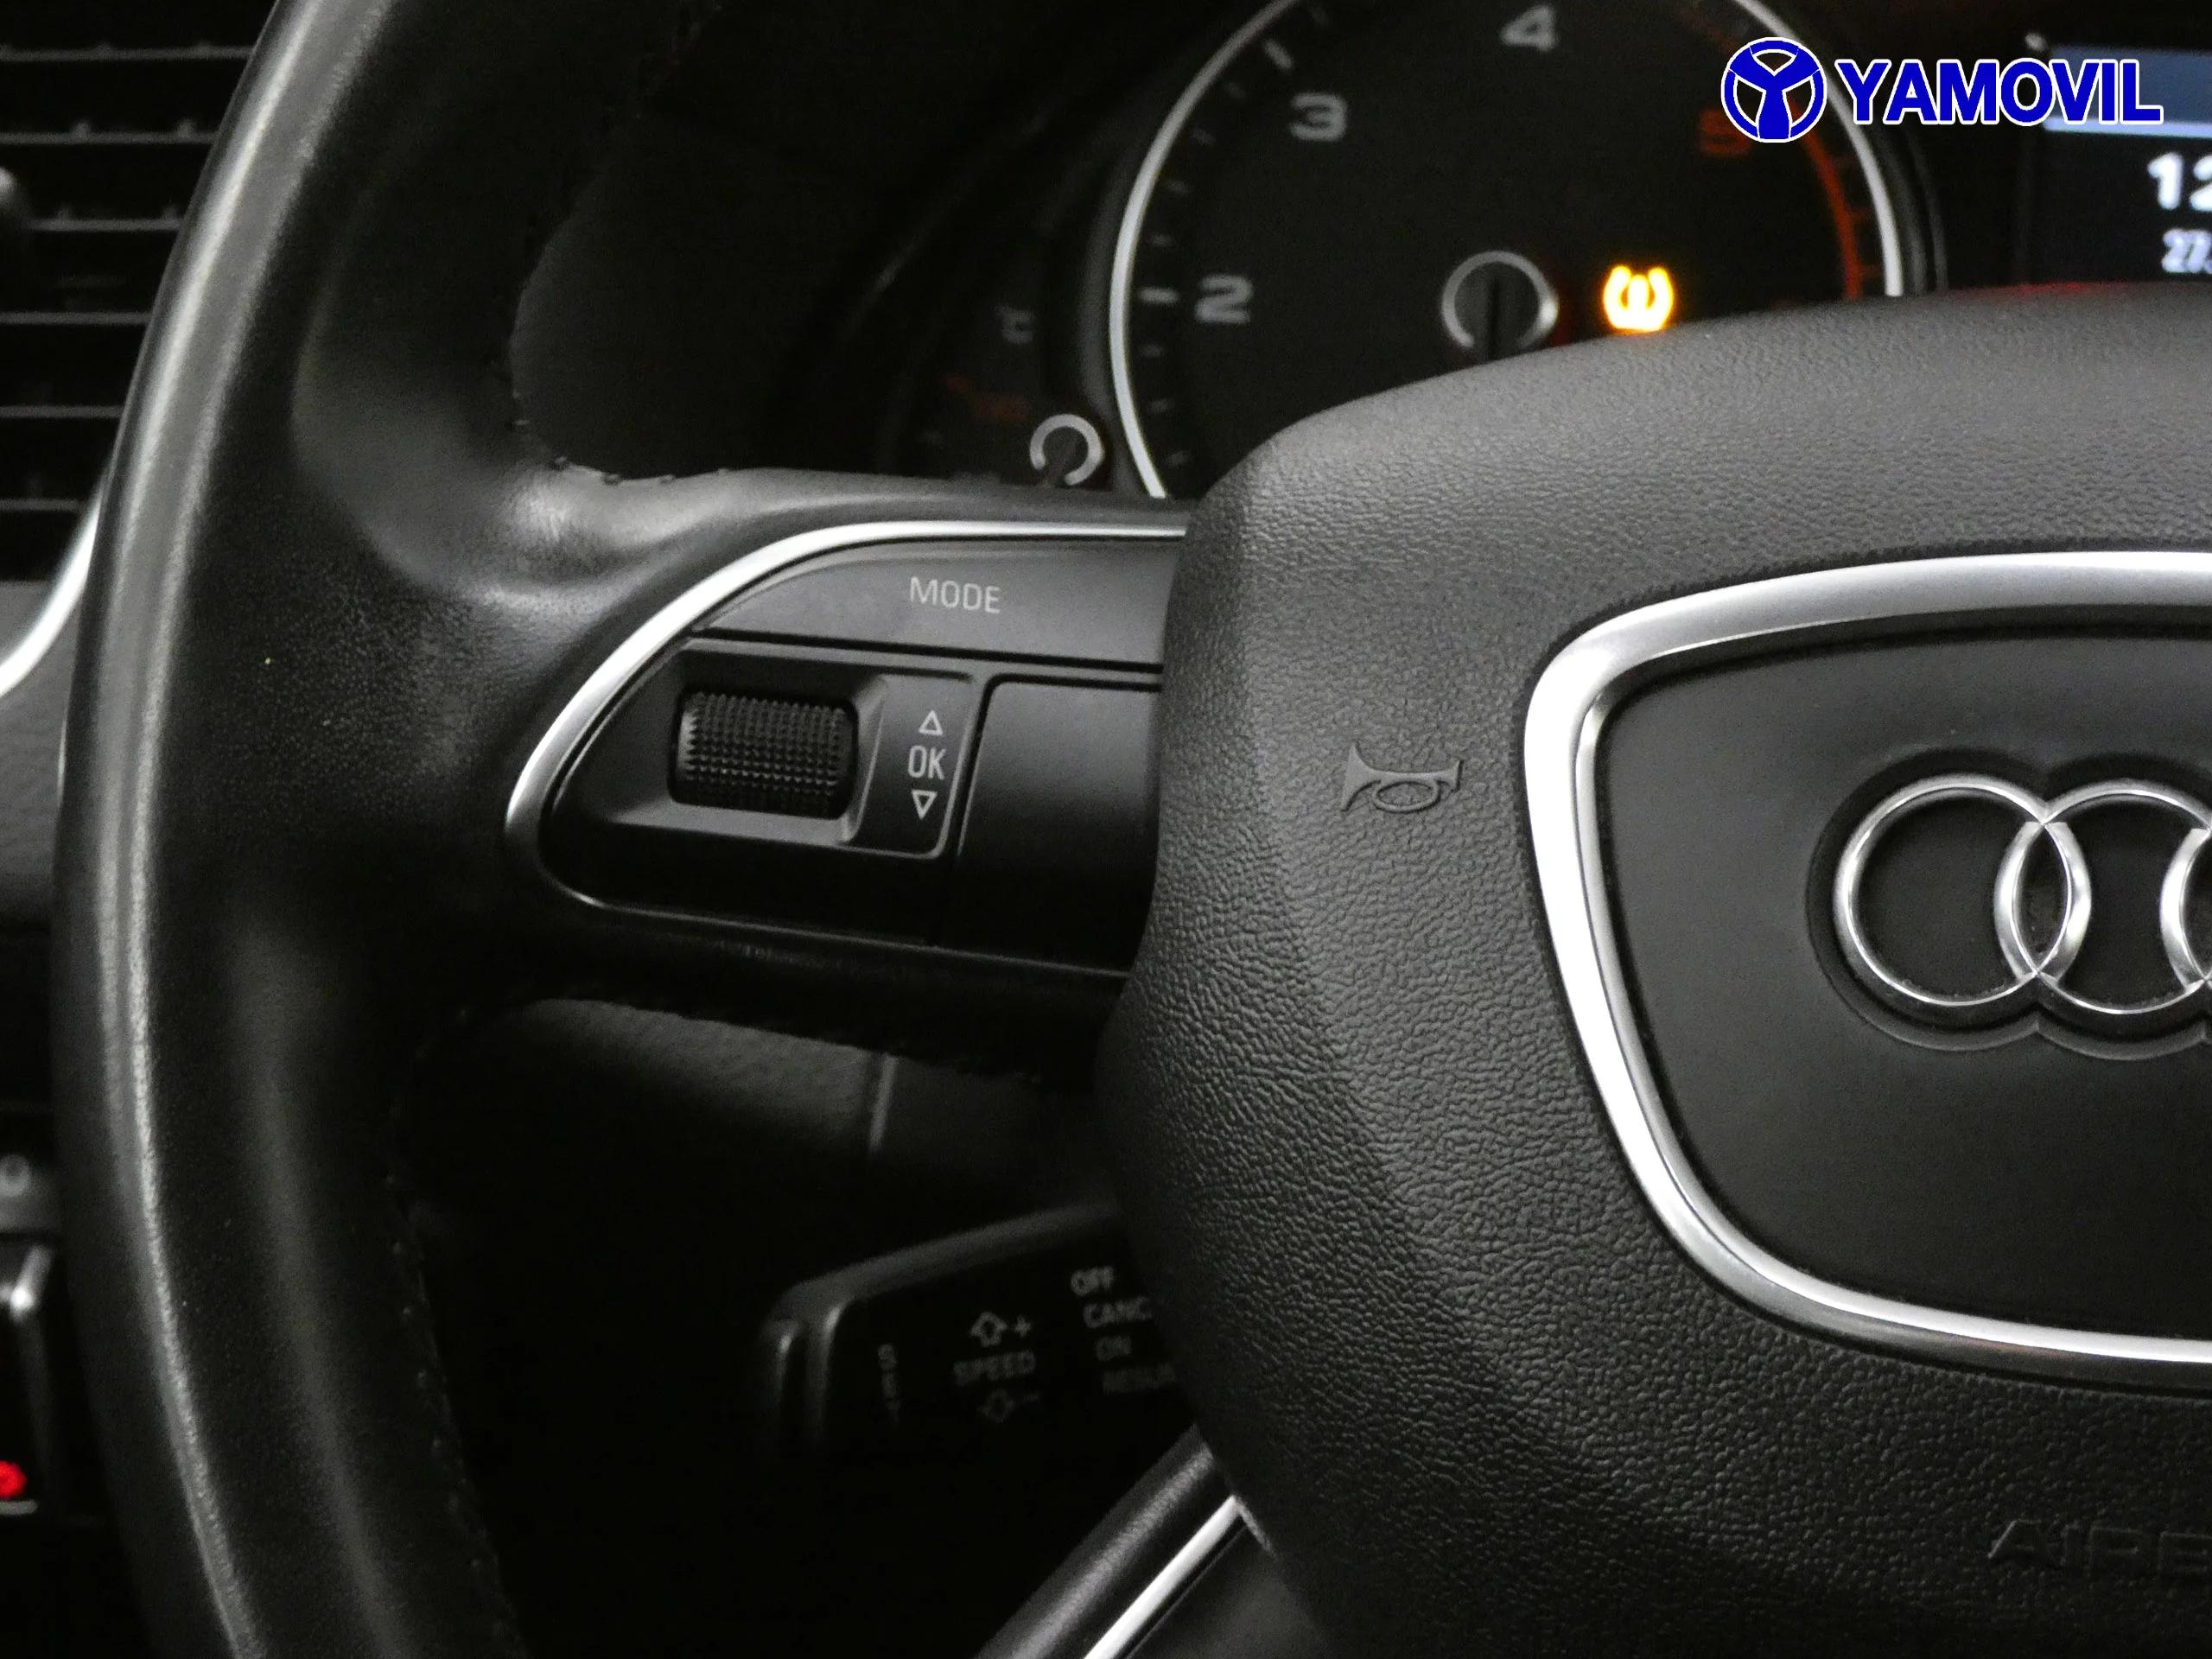 Audi Q5 2.0 TDI ULTRA ADVANCE EDITION 5P - Foto 19